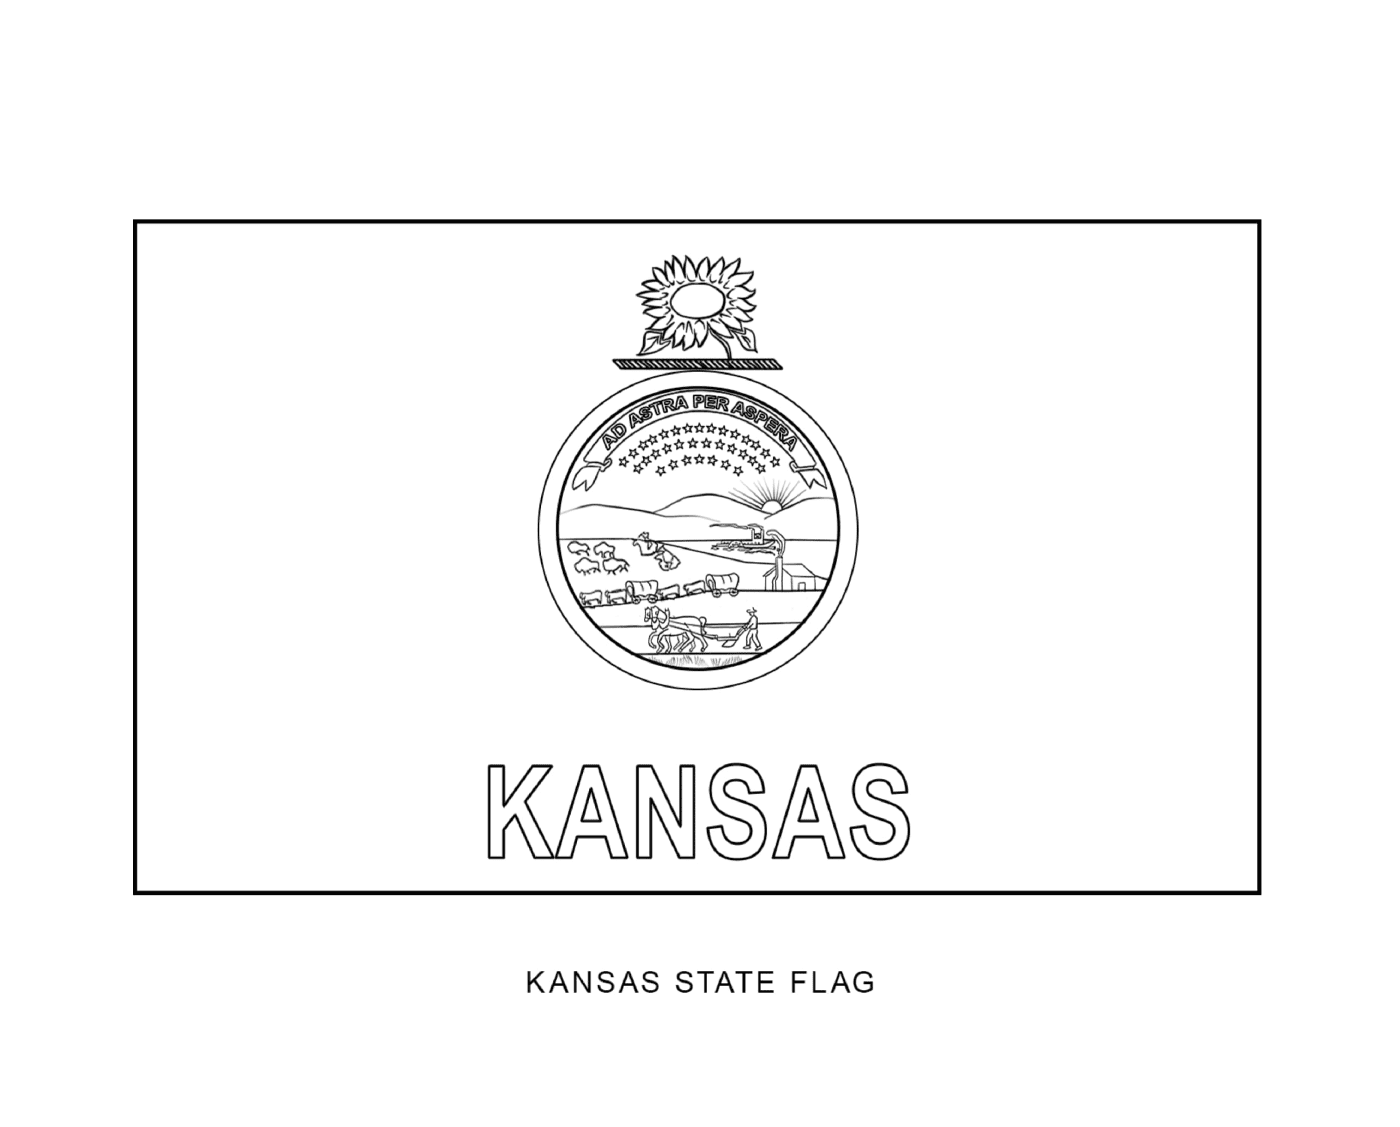  Государственный флаг Канзаса в черном и белом цветах 